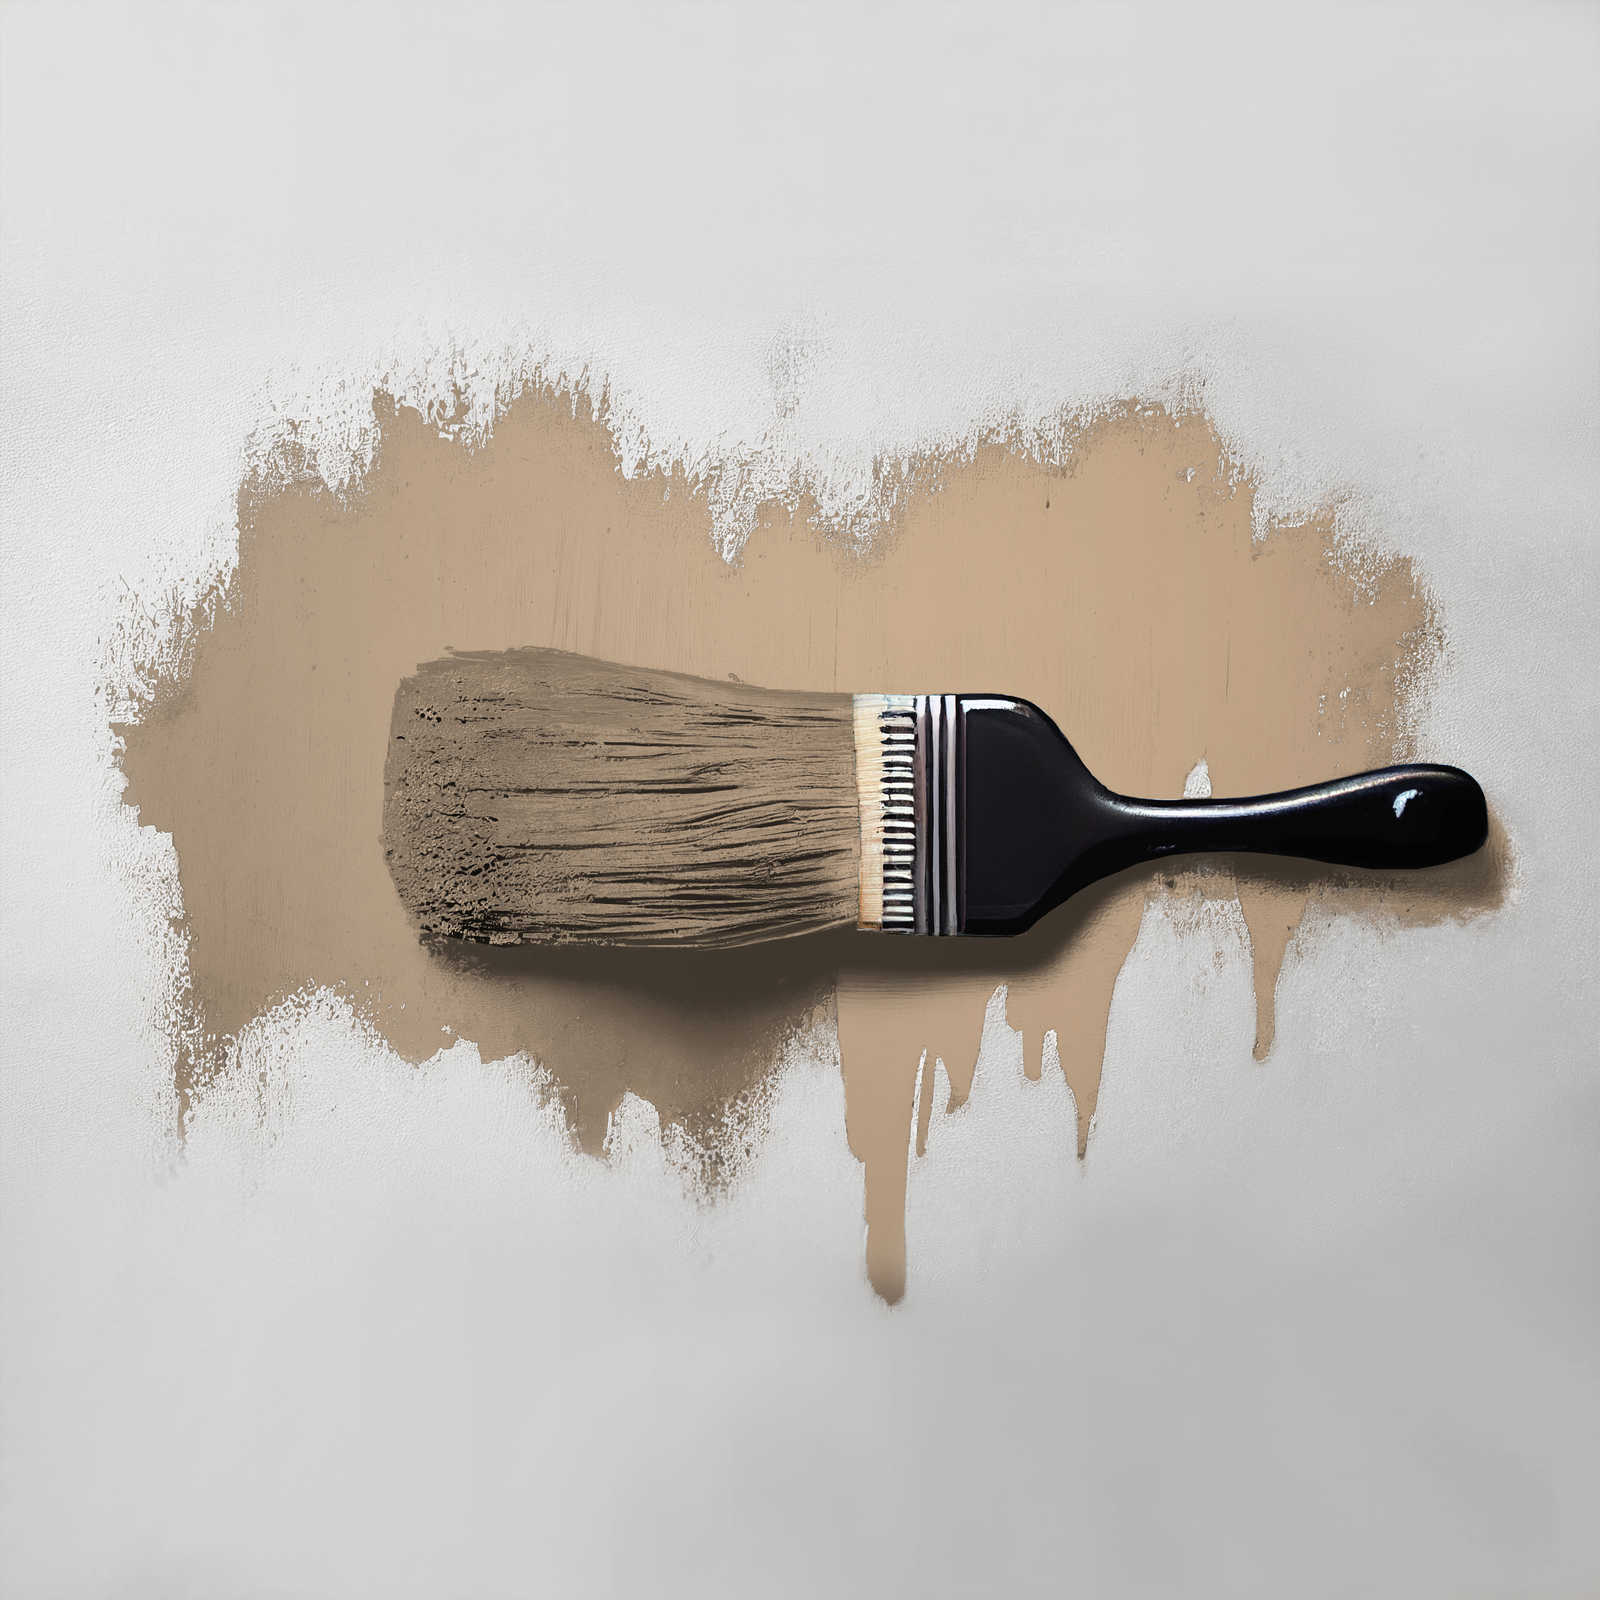             Pittura murale TCK6005 »Friendly Fennel« in marrone beige casalingo – 5,0 litri
        